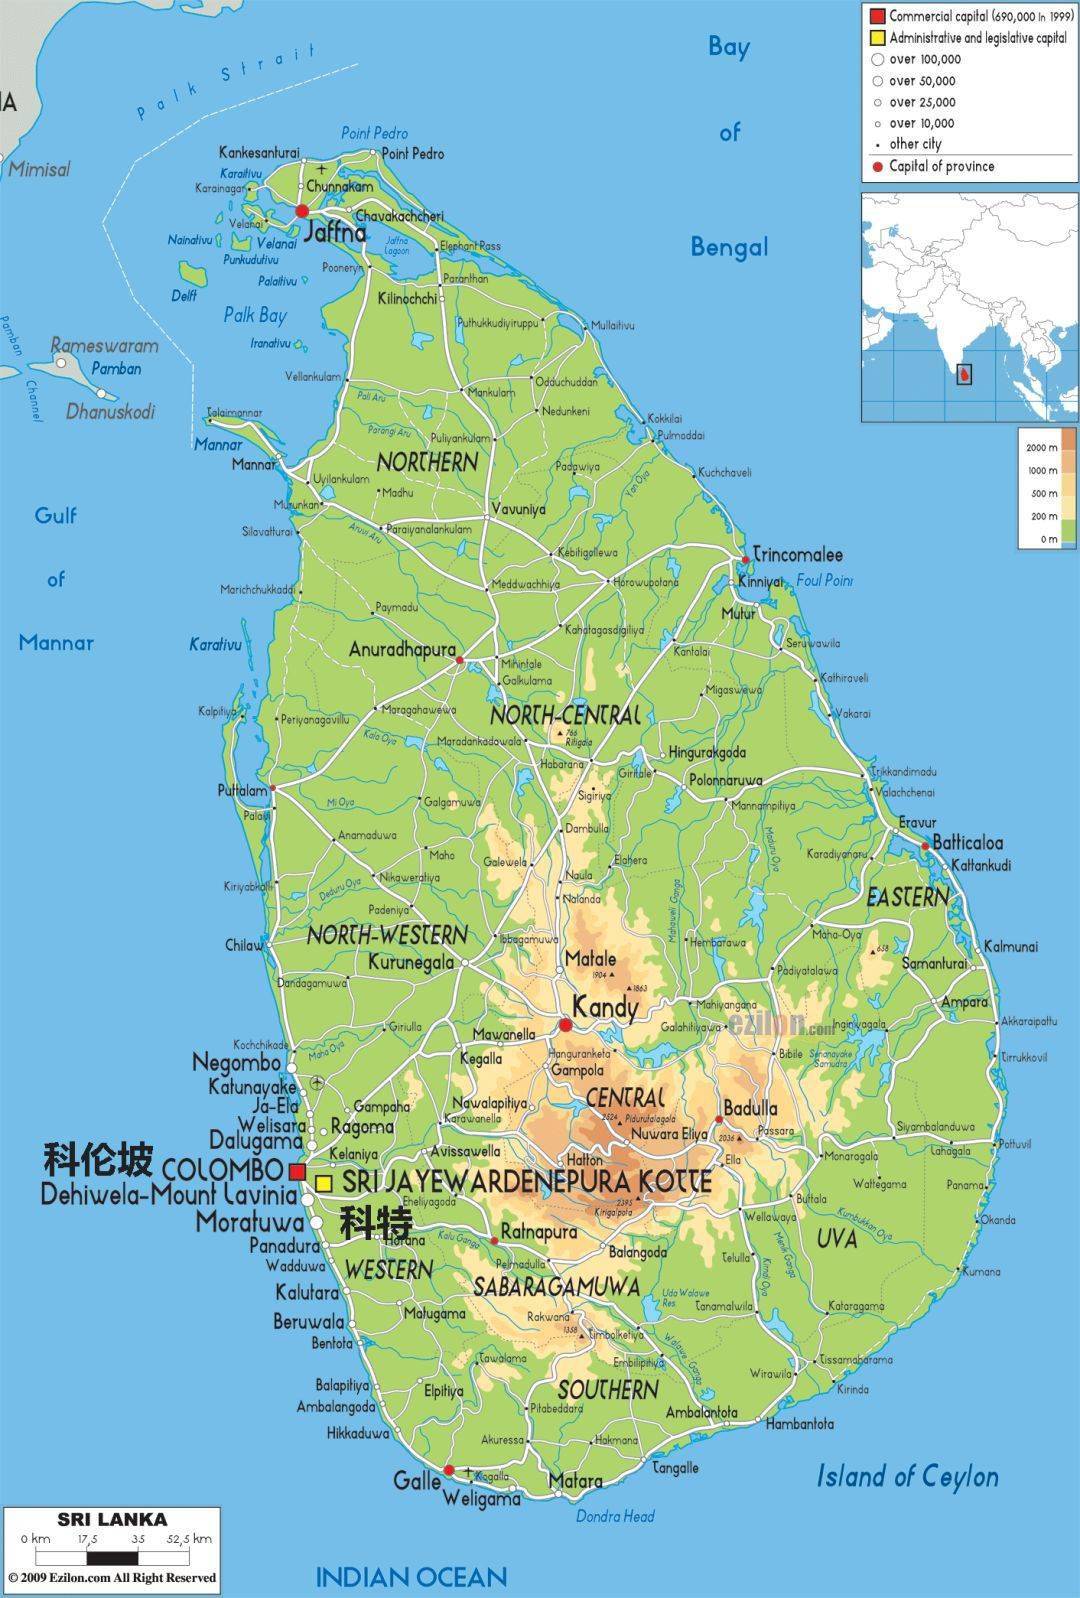 斯里兰卡地势中间高四周低,海拔1000米以上的高山地区大约占全岛面积